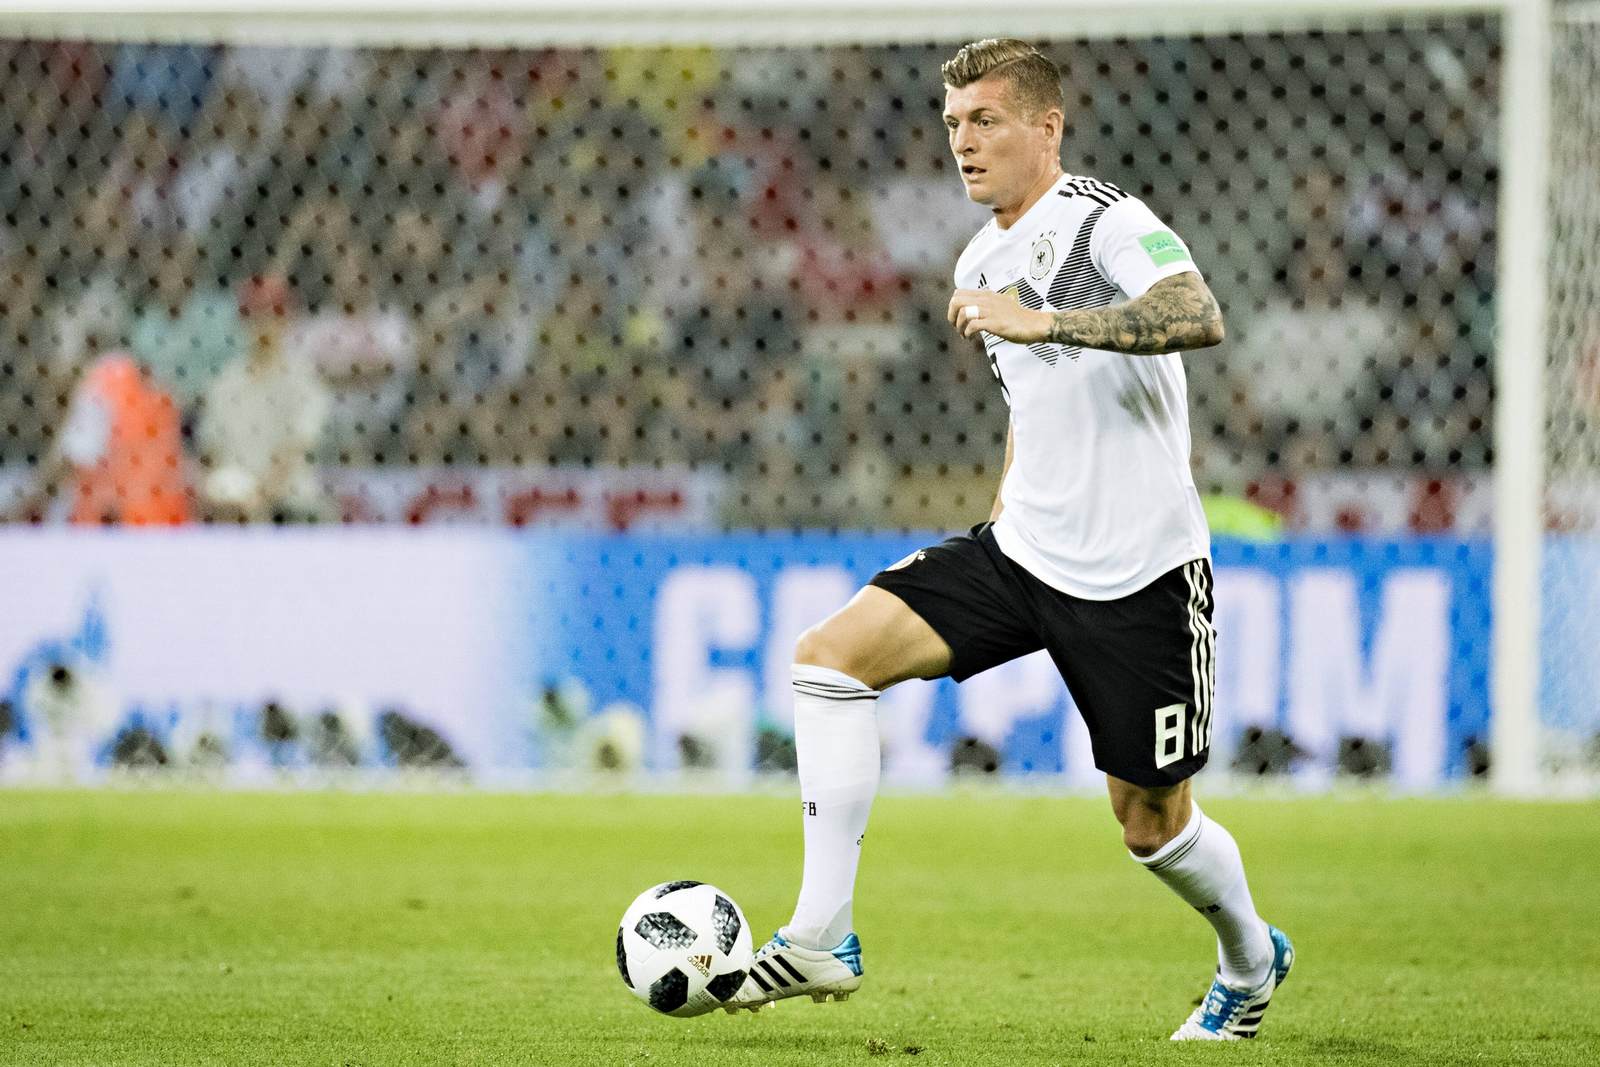 Führt Kroos die DFB-Elf zum Sieg? Jetzt auf Frankreich gegen Deutschland wetten